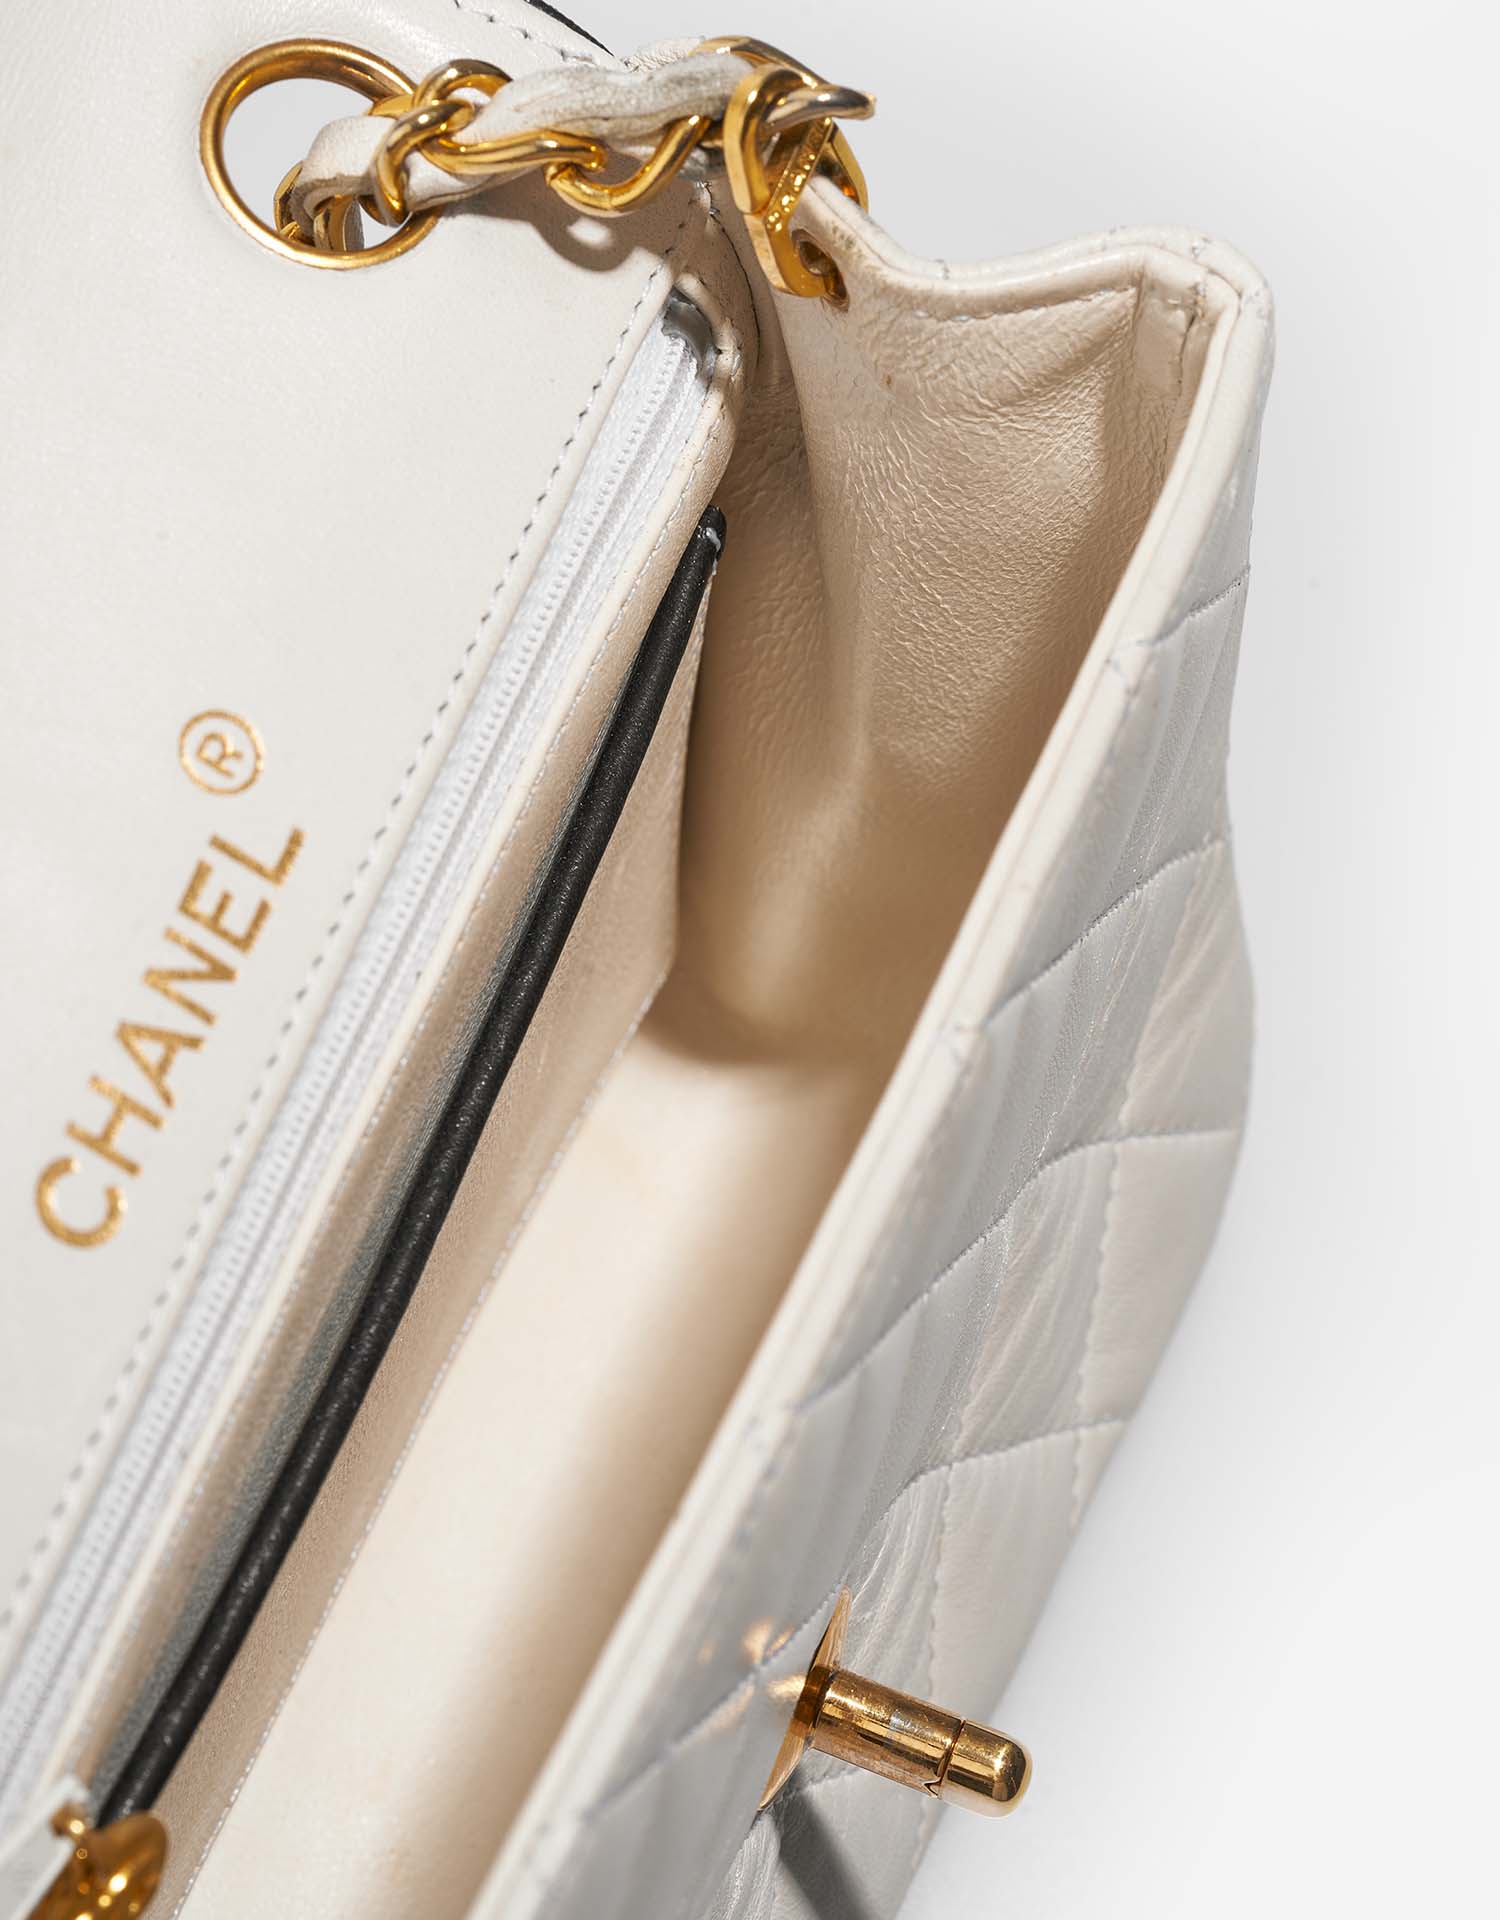 Chanel Timeless MiniSquare White Inside | Verkaufen Sie Ihre Designer-Tasche auf Saclab.com